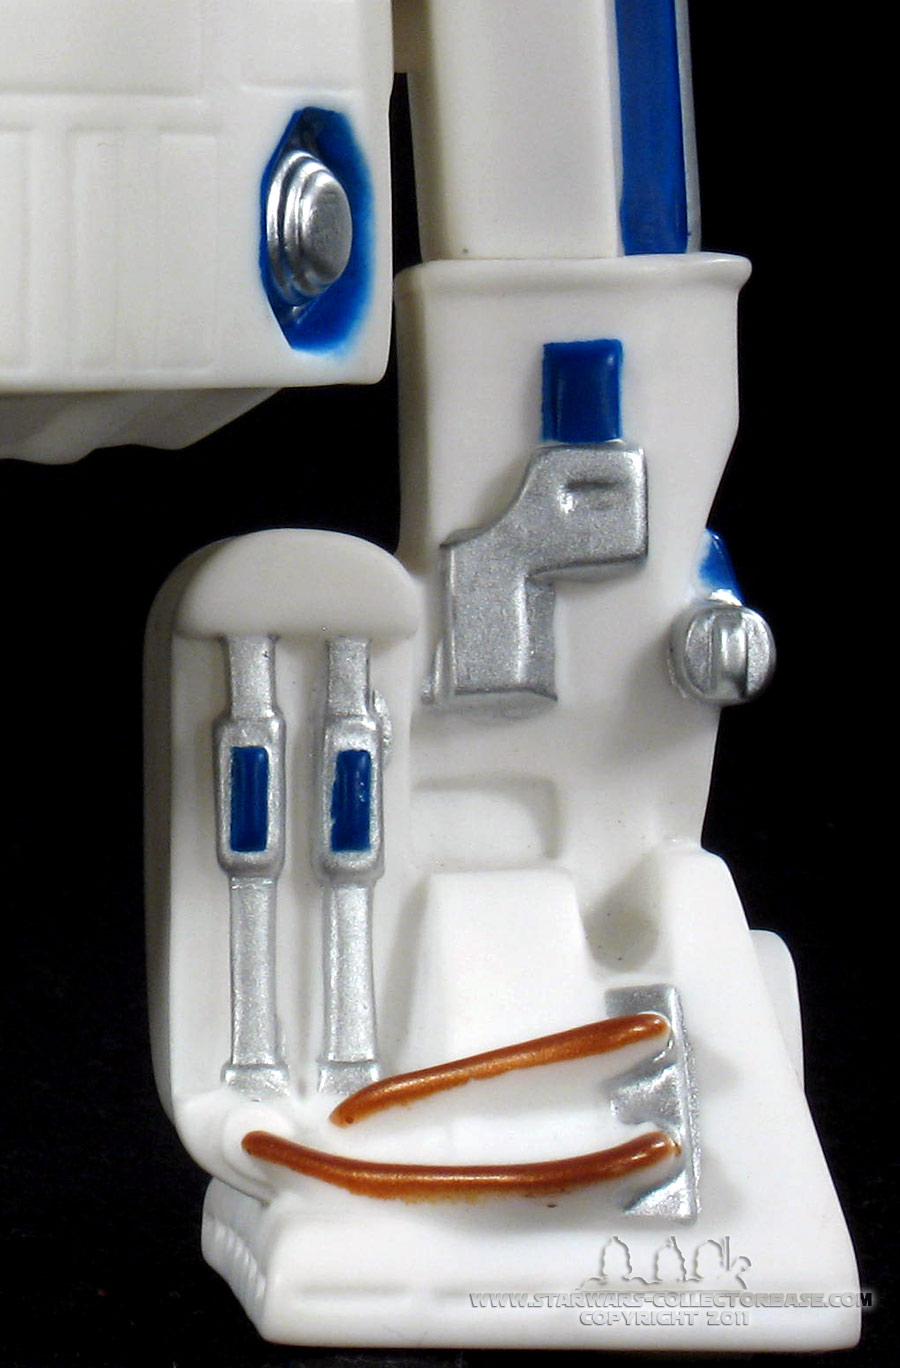 R2-D2 Spardose